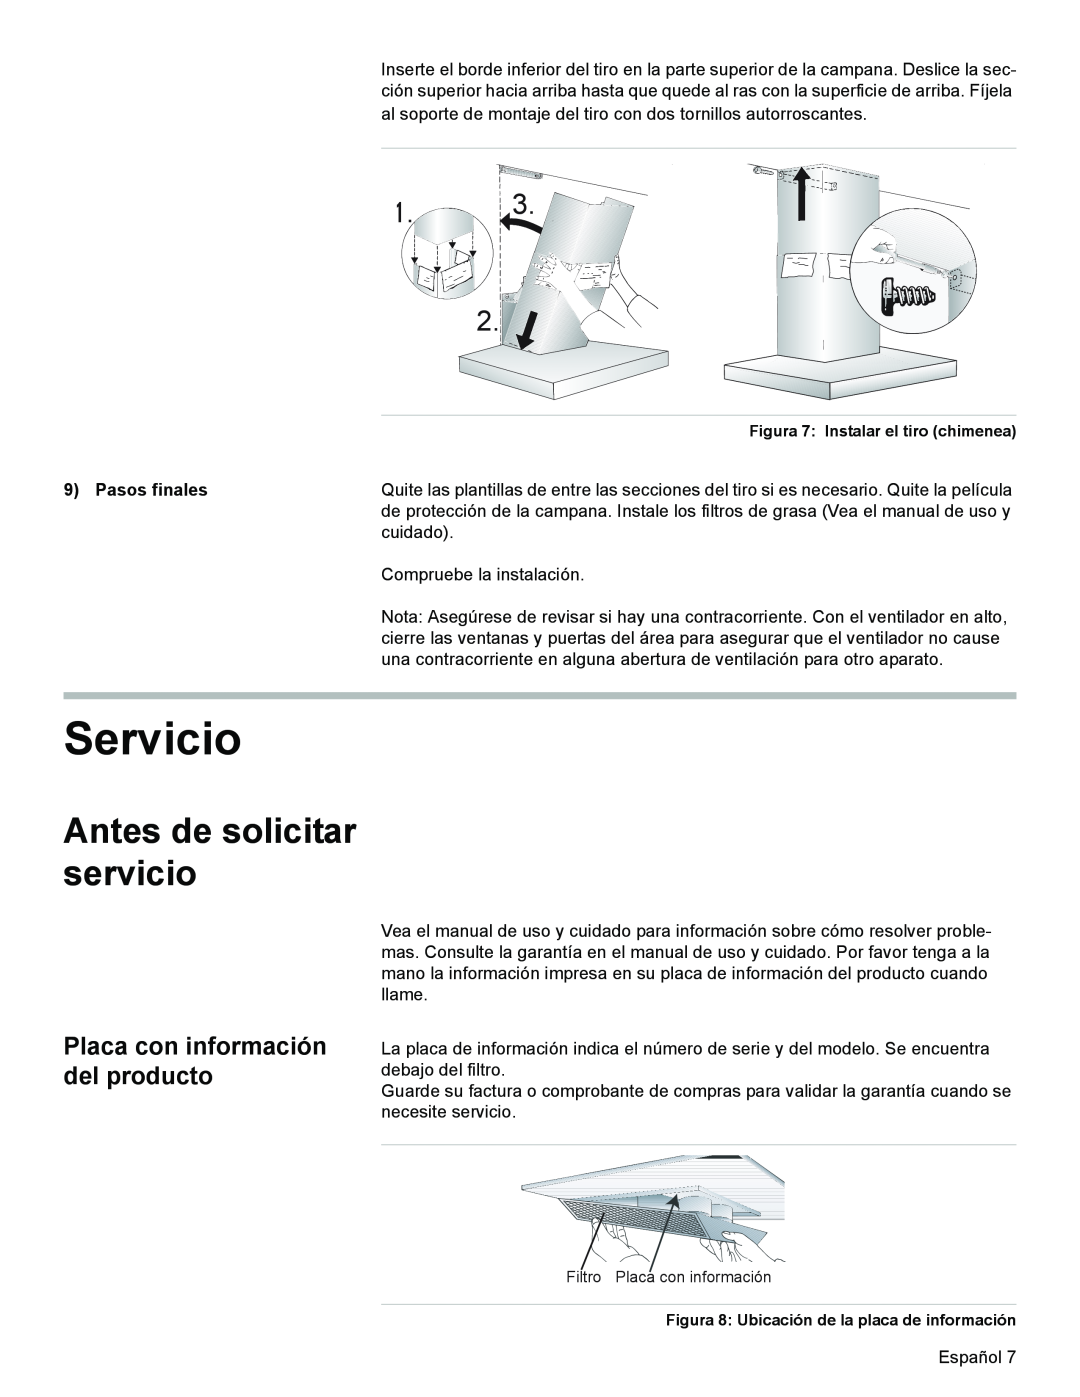 Bosch Appliances DKE96 Servicio, Antes de solicitar servicio, Placa con información del producto, Pasos finales 